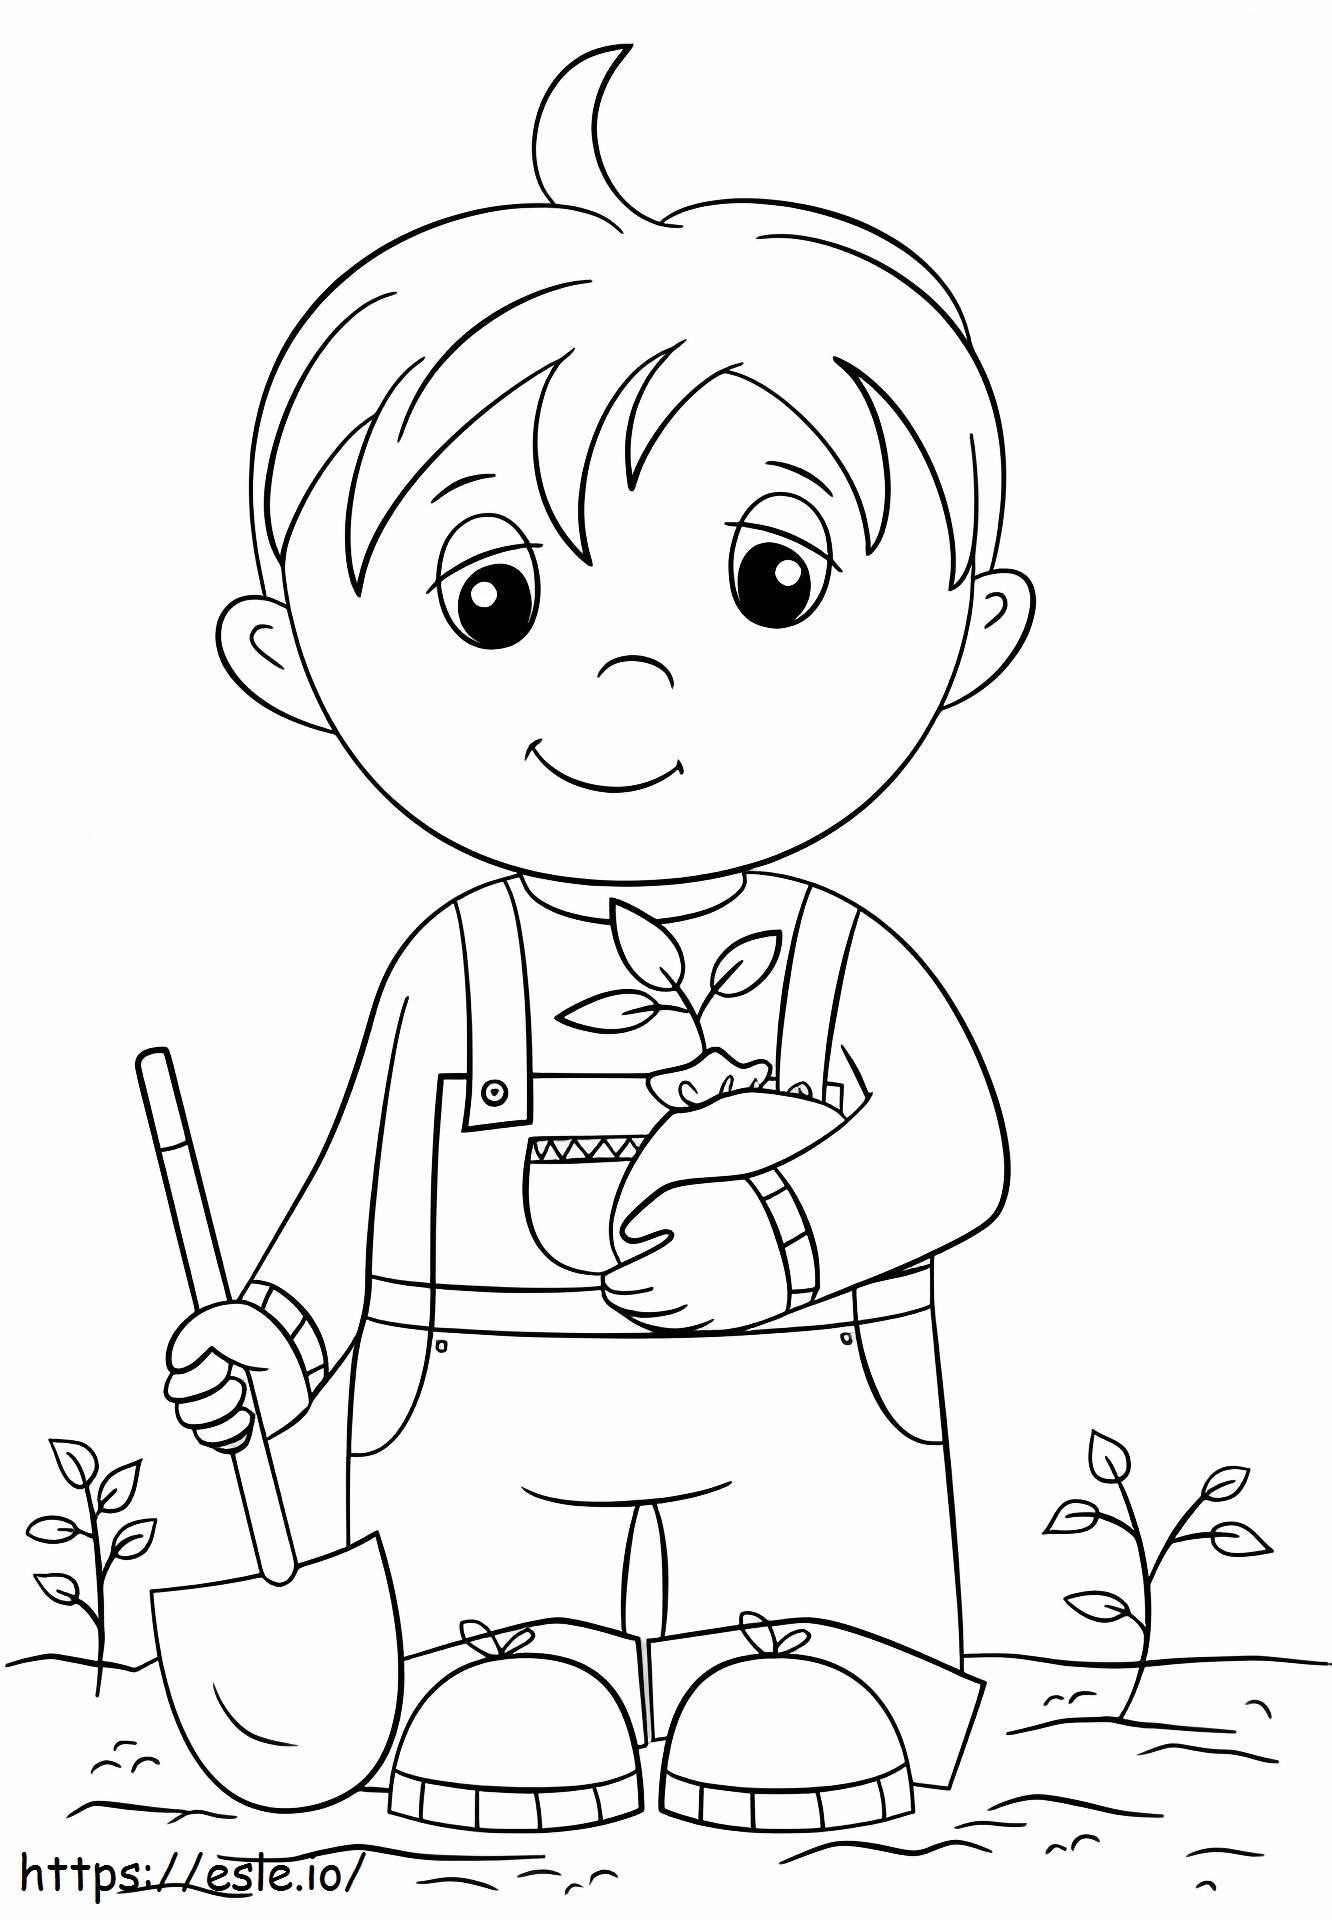 1526992643_Słodki mały chłopiec trzymający sadzonkę kolorowanka